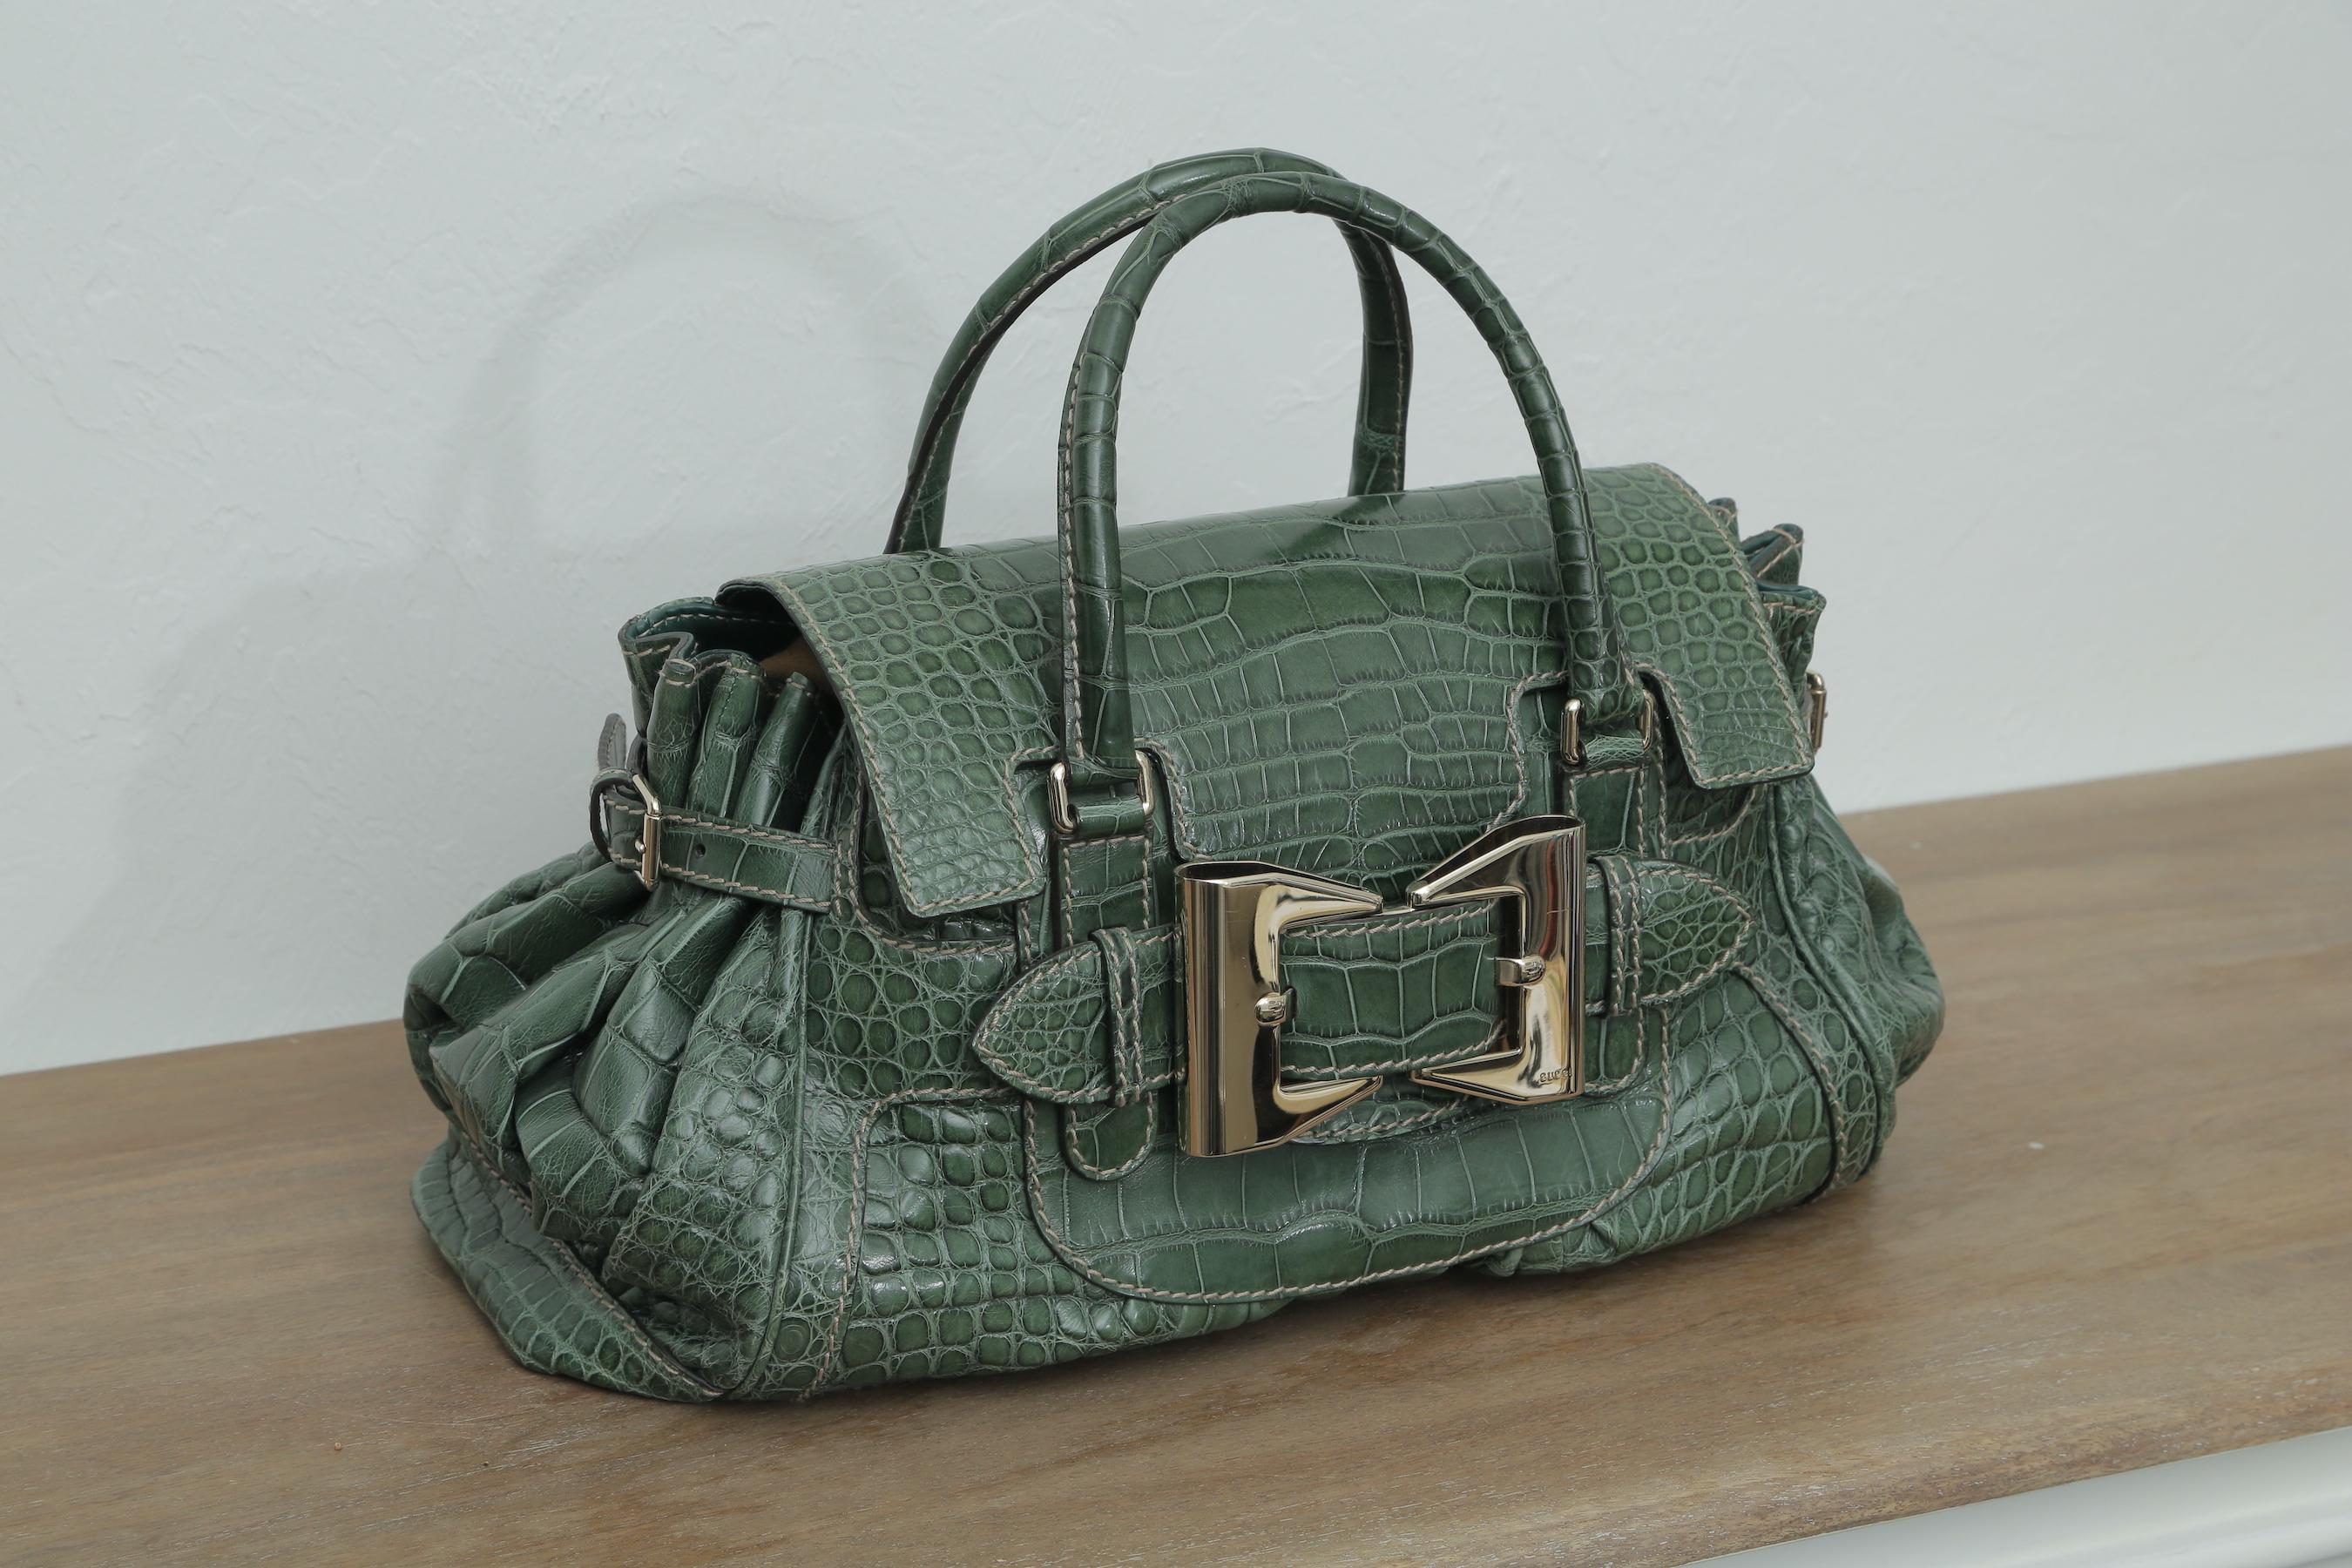 Limitierte Auflage der grünen Queen-Krokodiltasche.  Dies ist eine wunderschöne Krokodil-Reisetasche mit zwei Griffen mit einem 4